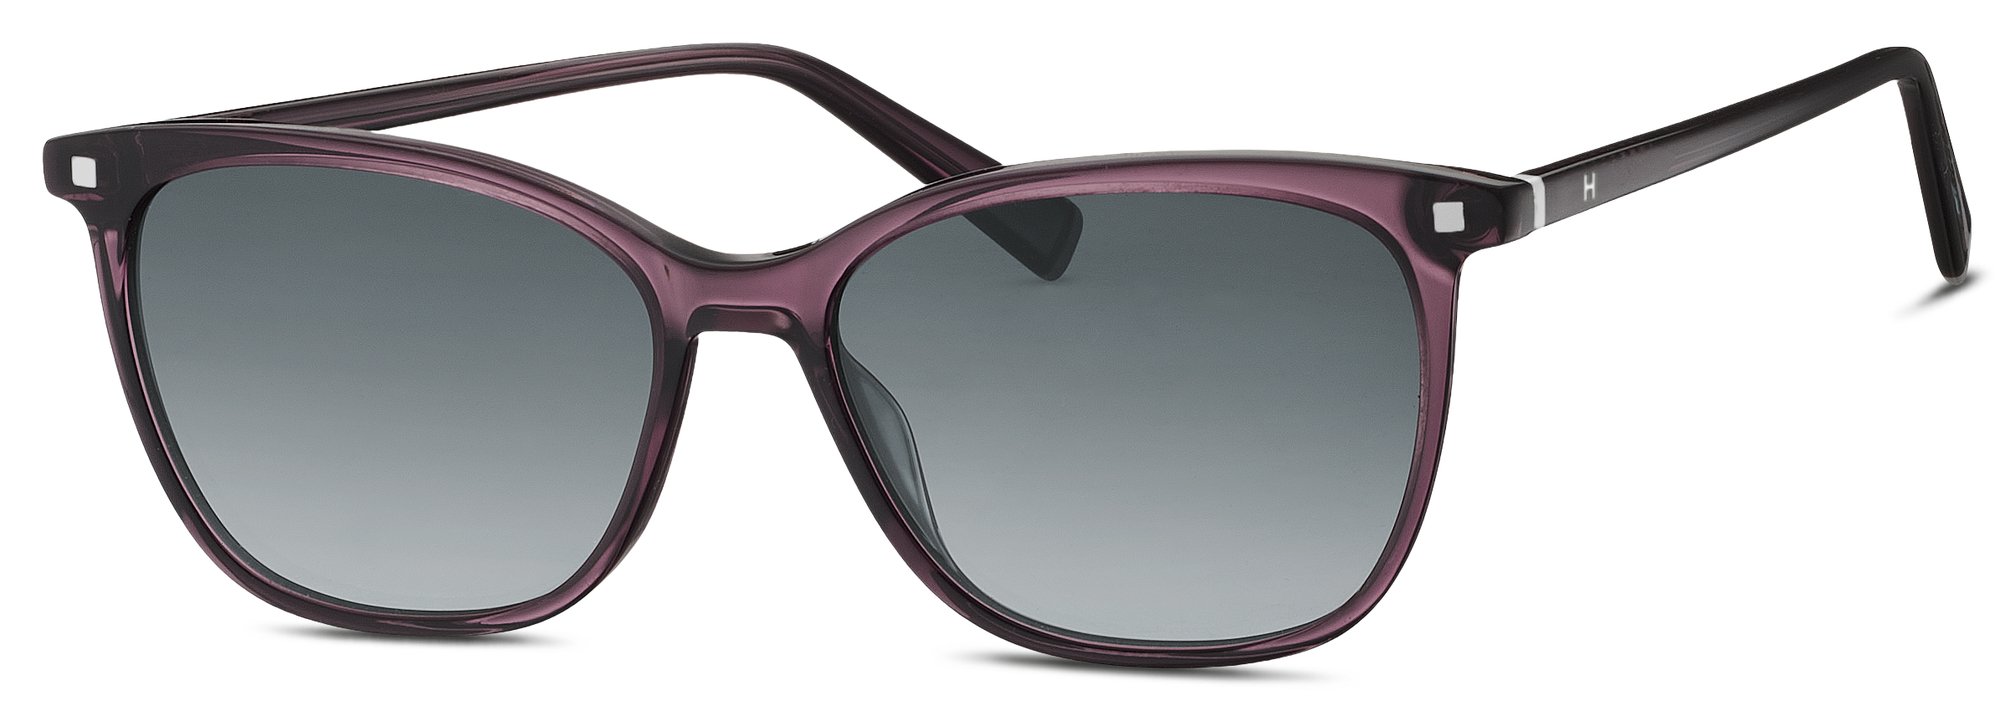 Das Bild zeigt die Sonnenbrille 588174 50 von der Marke Humphrey's in rosa/rot/violett.